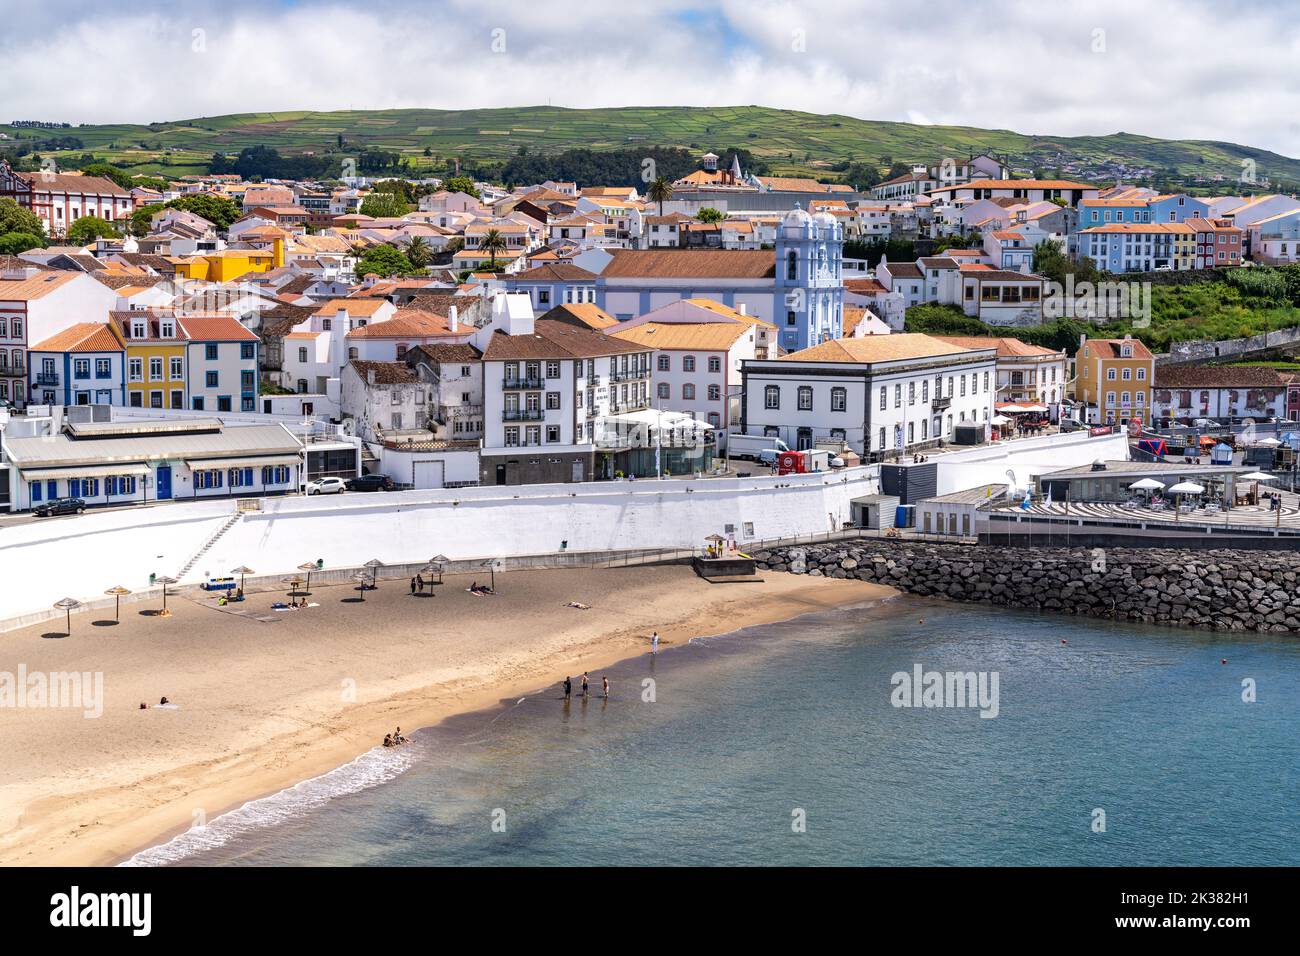 Vista sulla spiaggia pubblica chiamata Praia de Angra do Heroismo e sul porto turistico nel centro storico di Angra do Heroismo, sull'isola di Terceira, sulle Azzorre e sul Portogallo. Foto Stock